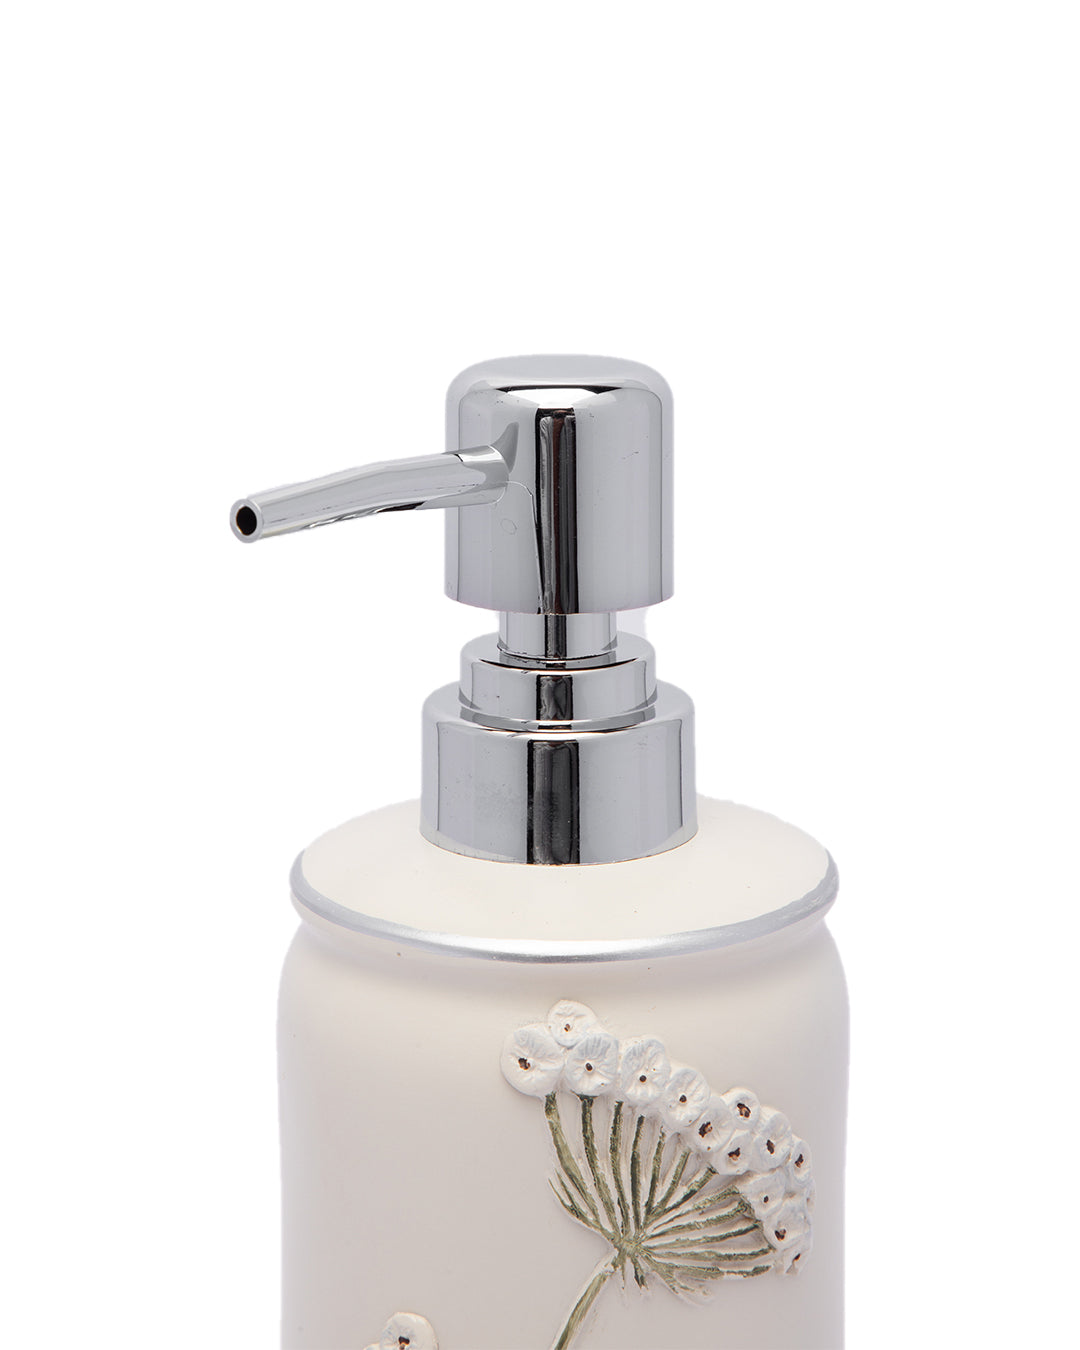 VON CASA Julia Handcrafted Soap Dispenser